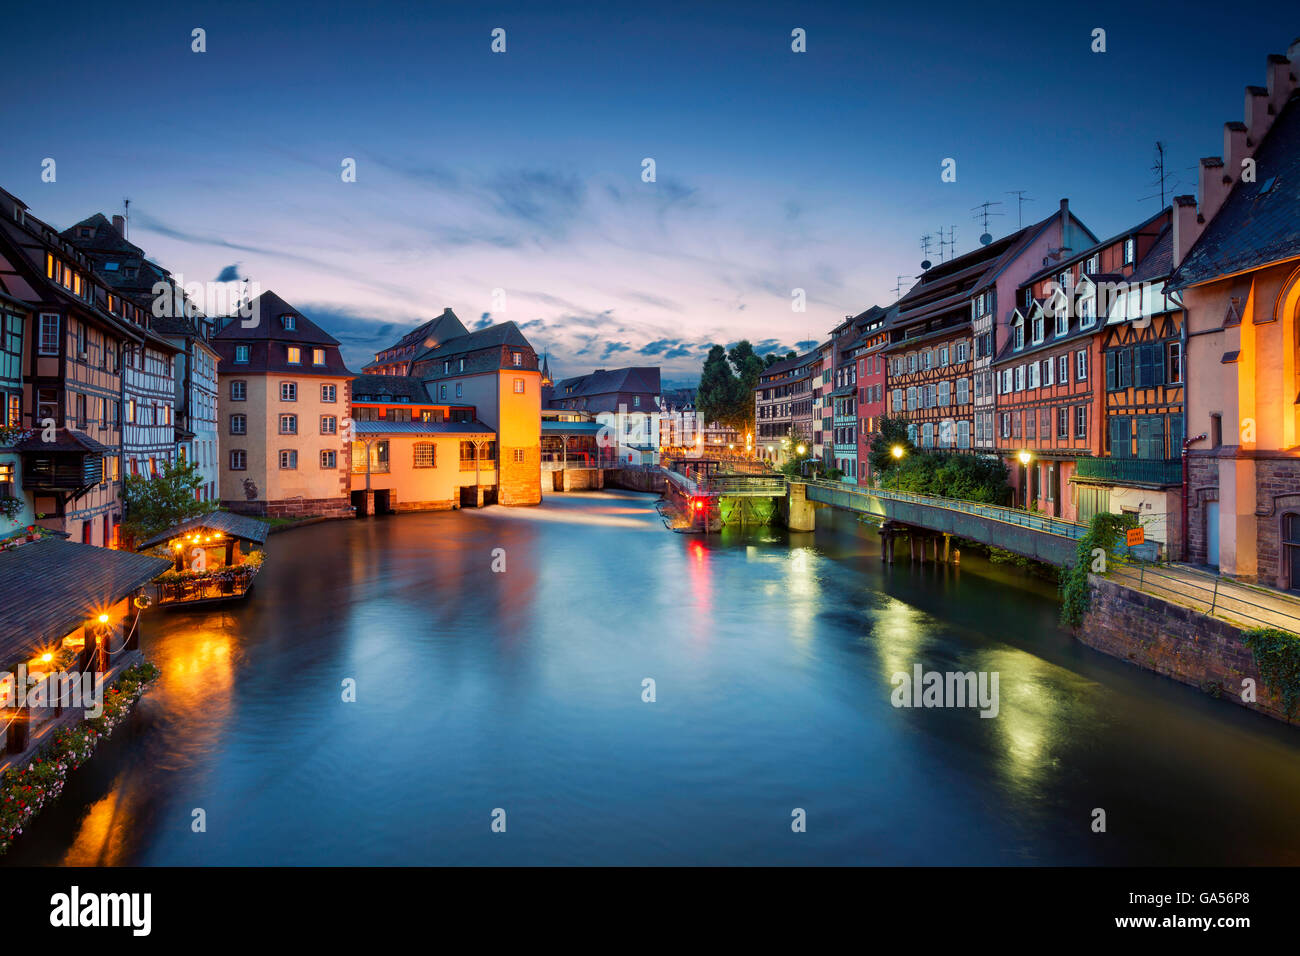 Estrasburgo. imagen del casco antiguo de Estrasburgo durante la hora azul crepúsculo. Foto de stock